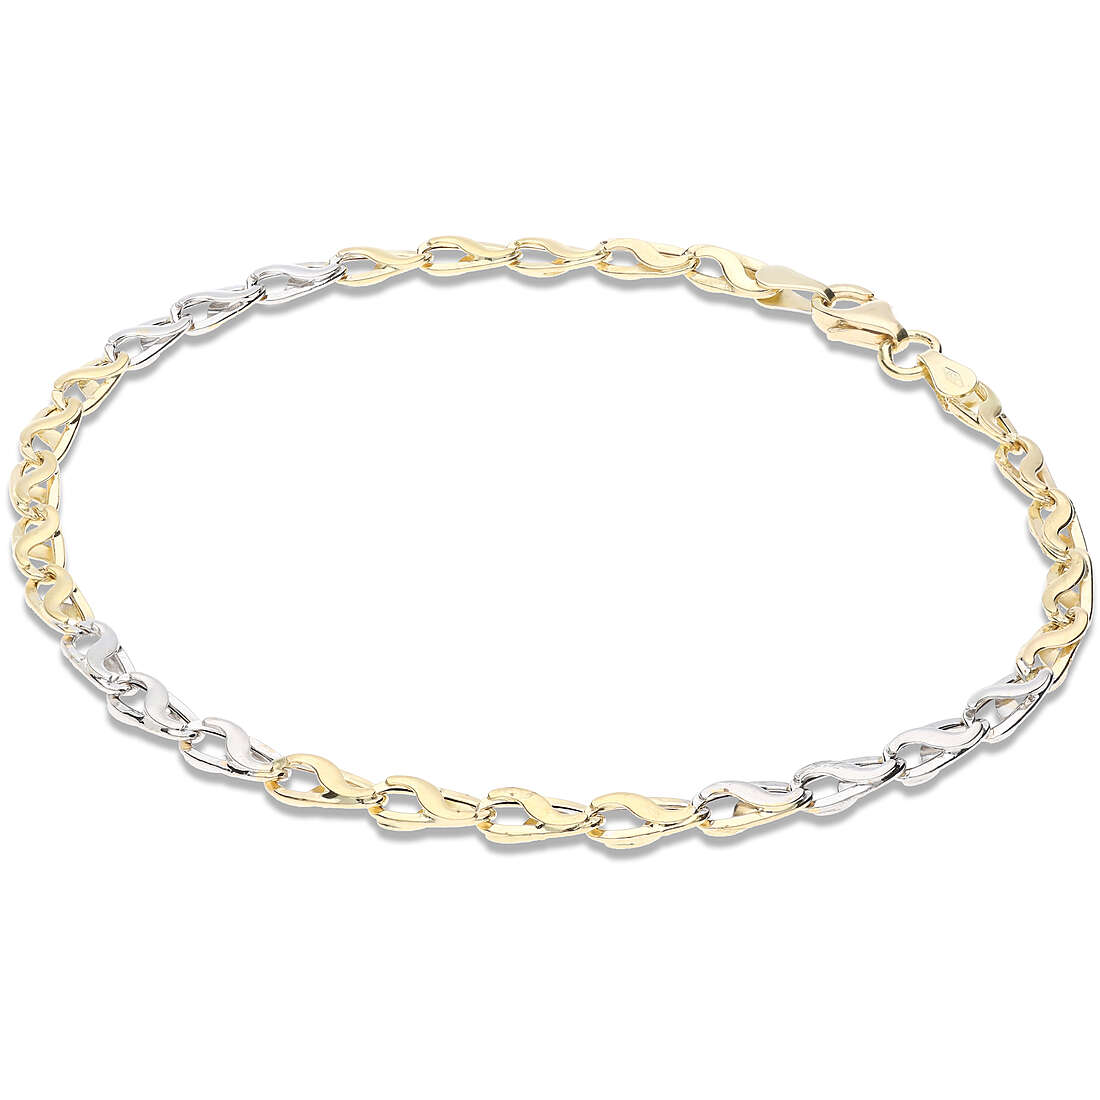 bracelet man Chain 18 kt Gold jewel GioiaPura Oro 750 GP-SMLP080GB21